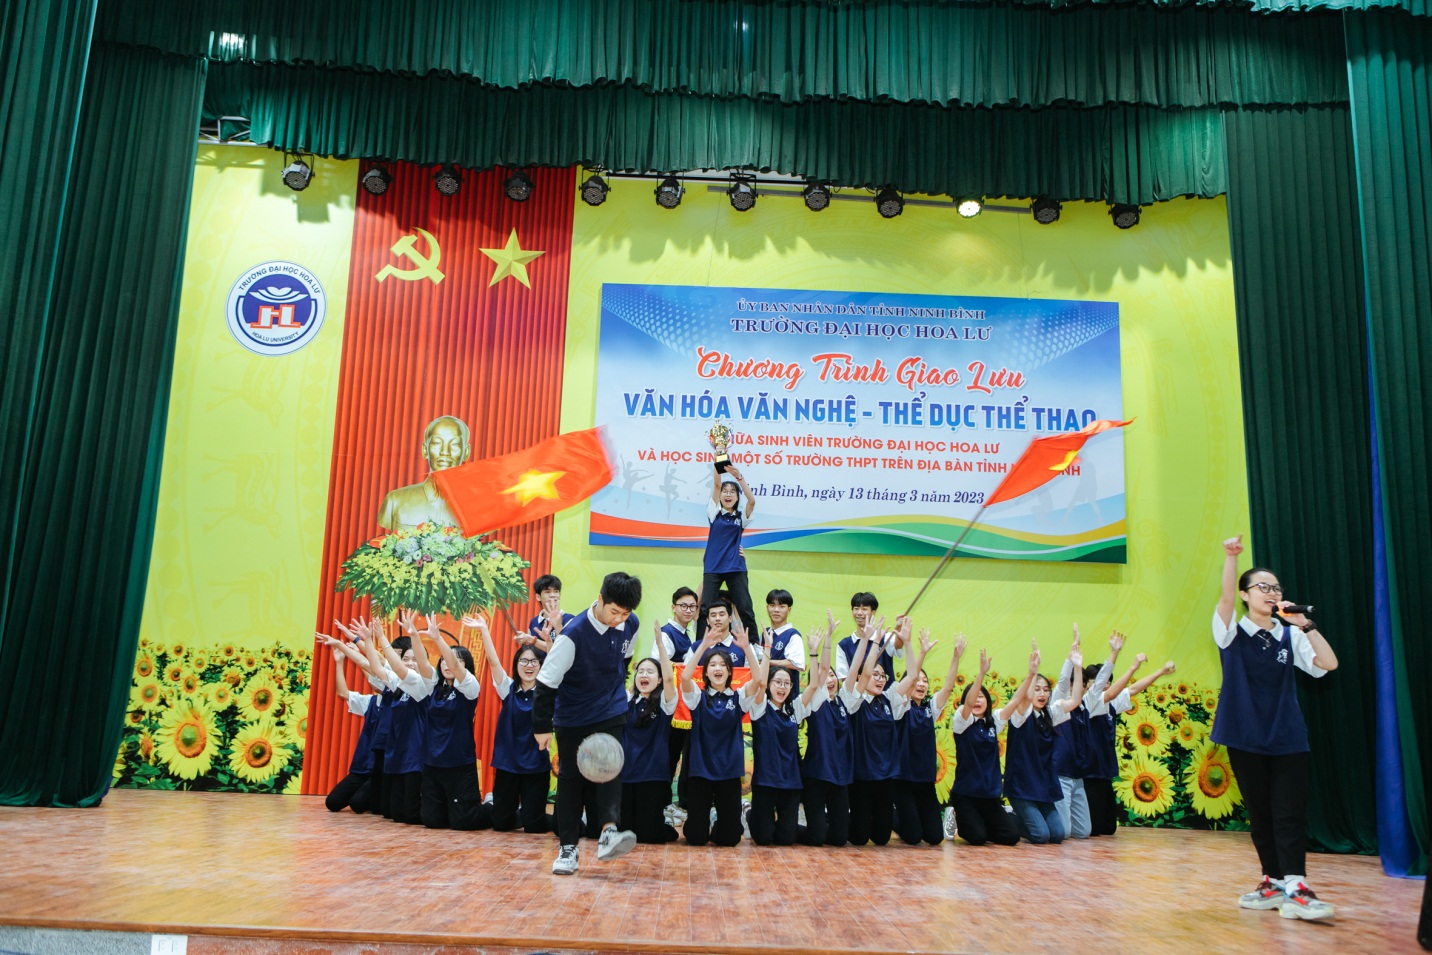 Chương trình giao lưu văn hóa – văn nghệ, thể dục – thể thao giữa sinh viên trường Đại học Hoa Lư và học sinh một số trường THPT trên địa bàn tỉnh Ninh Bình